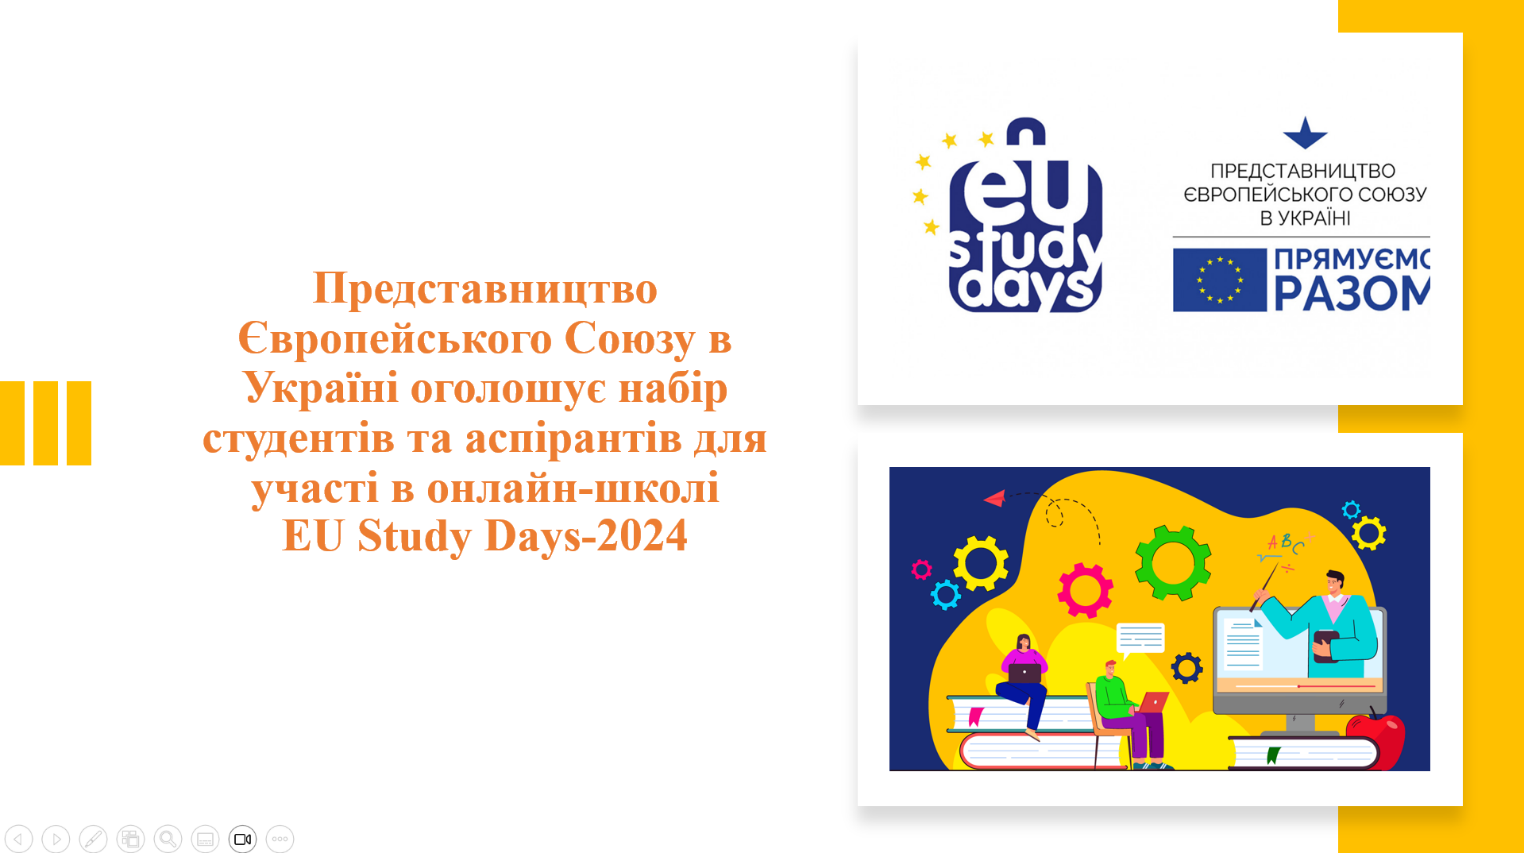 Представництво Європейського Союзу в Україні оголошує набір студентів та аспірантів для участі в онлайн-школі EU Study Days-2024